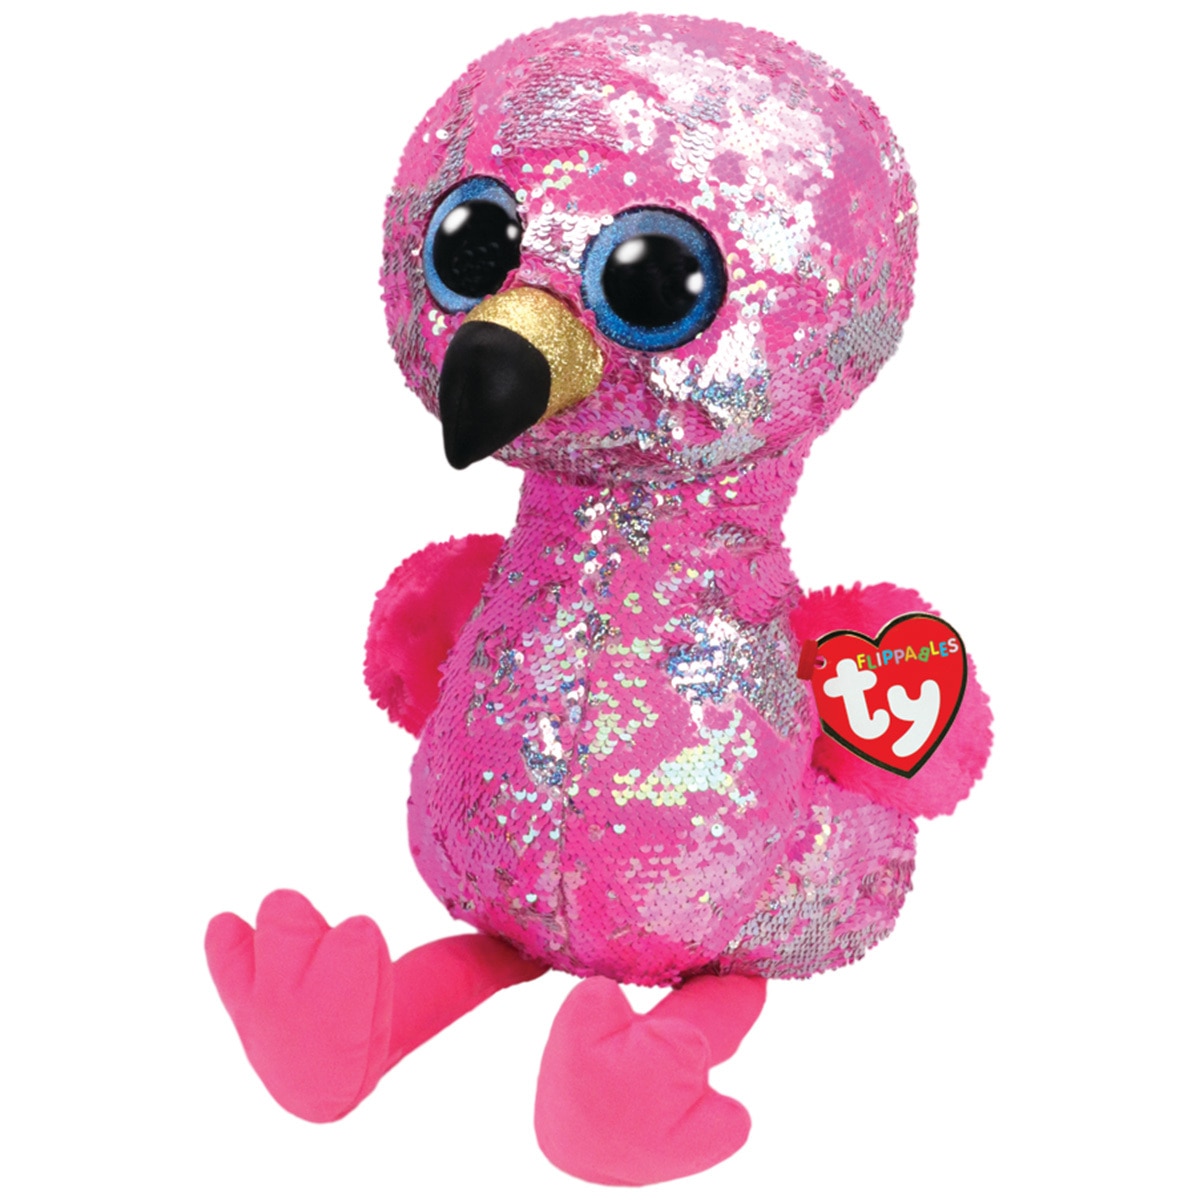 flamingo stuffed animal plush large